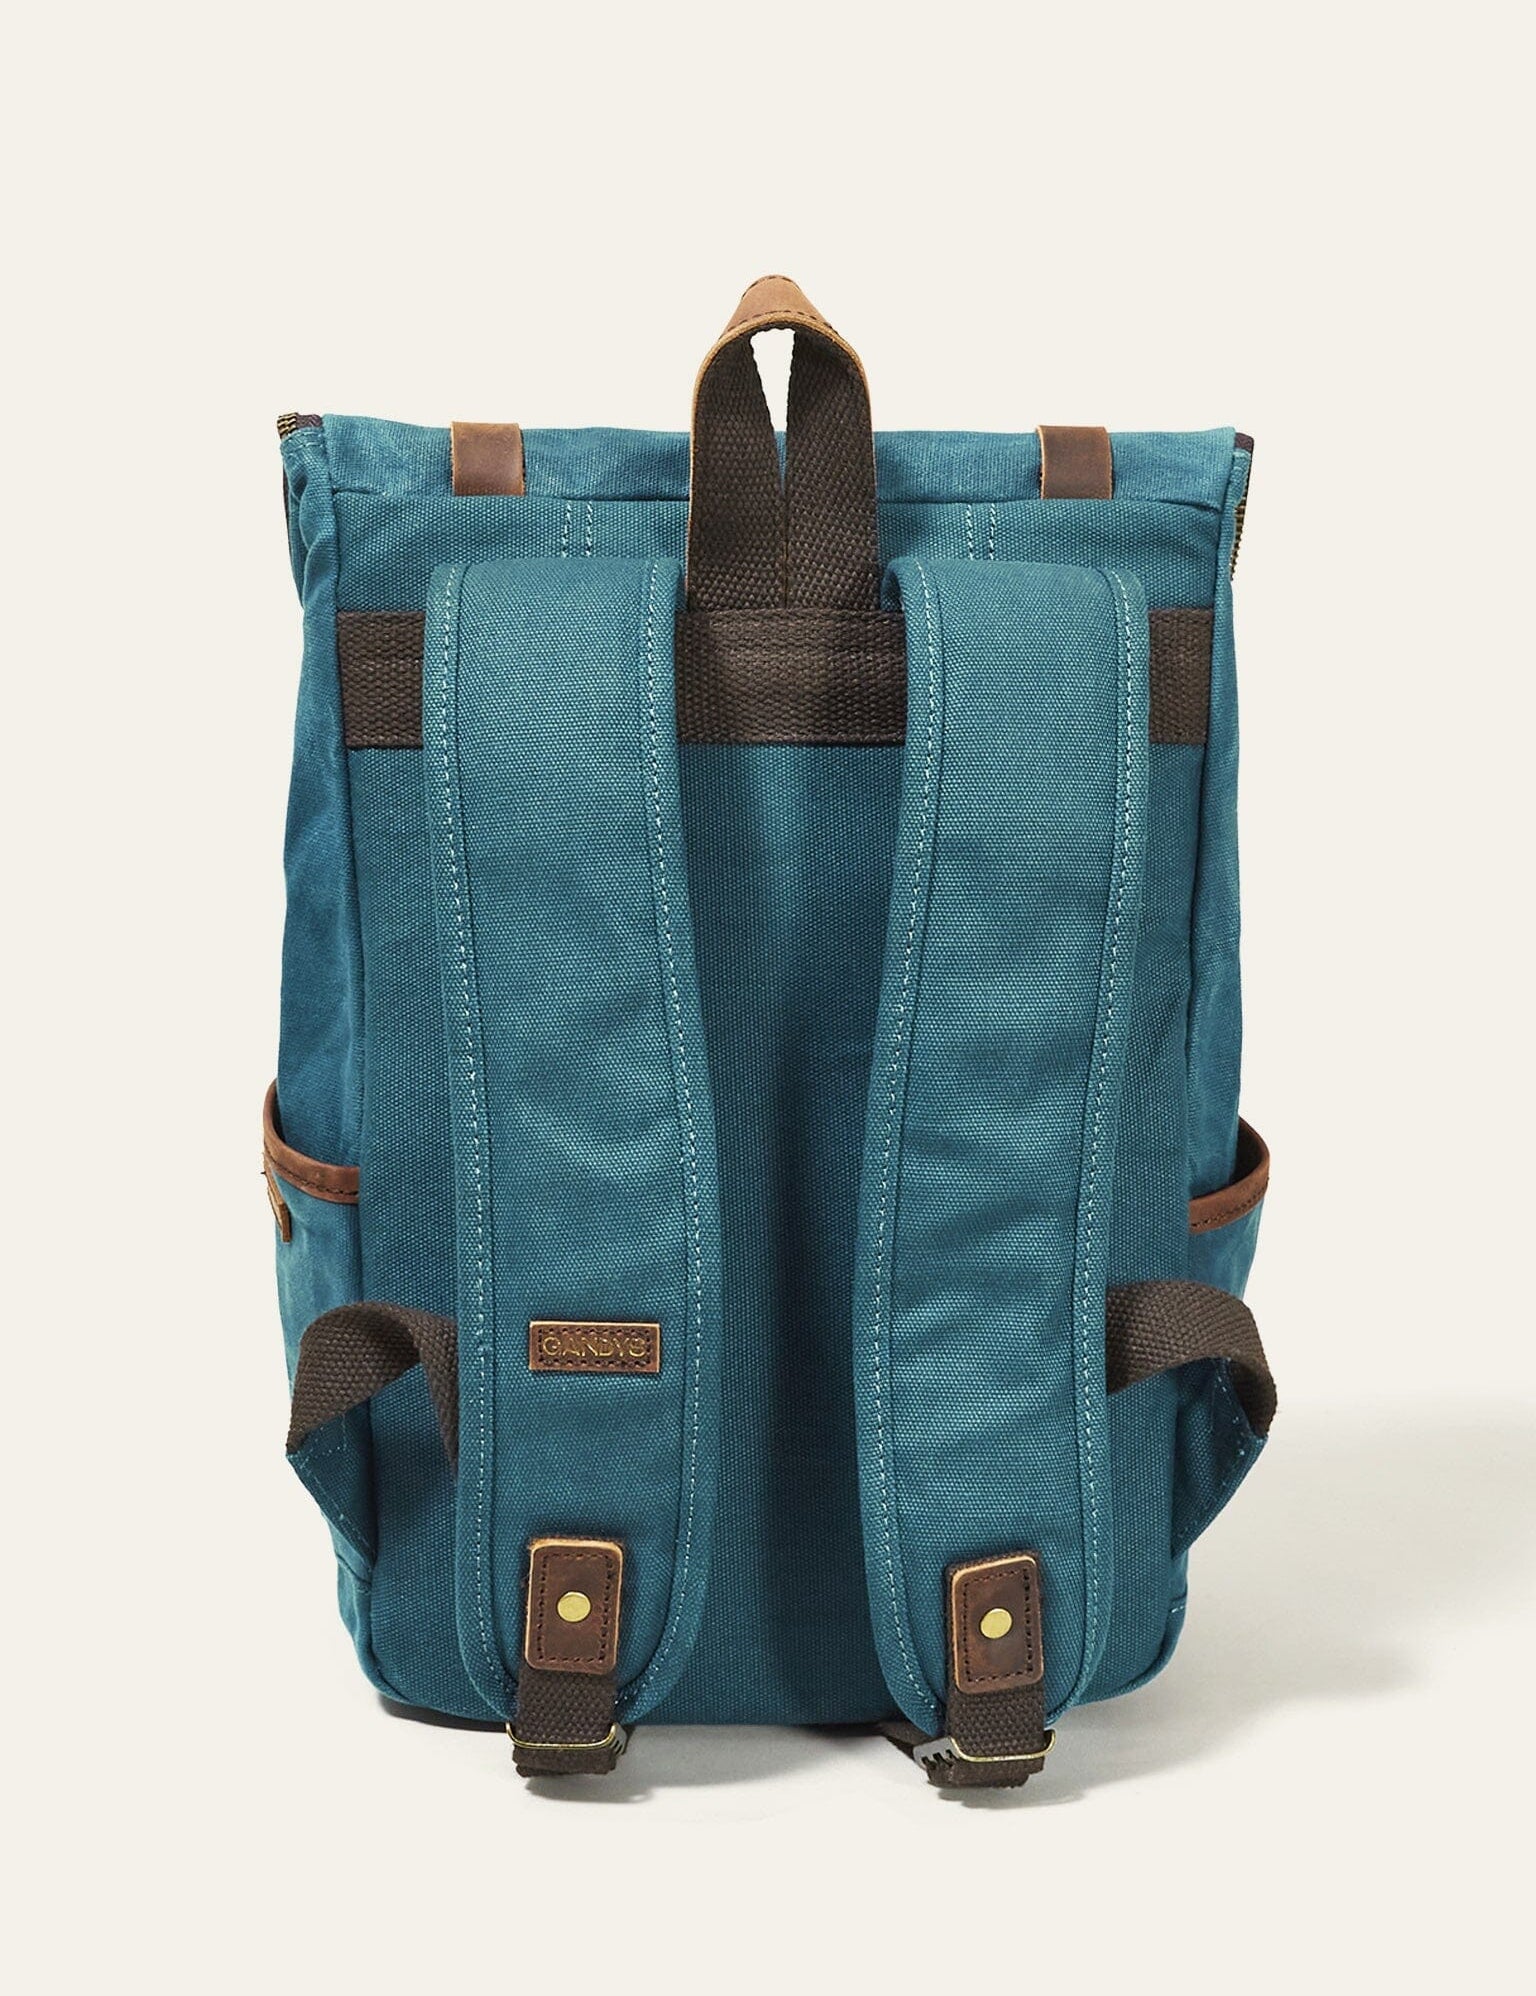 teal-waxed-authentic-mini-bali-backpack-948194.jpg